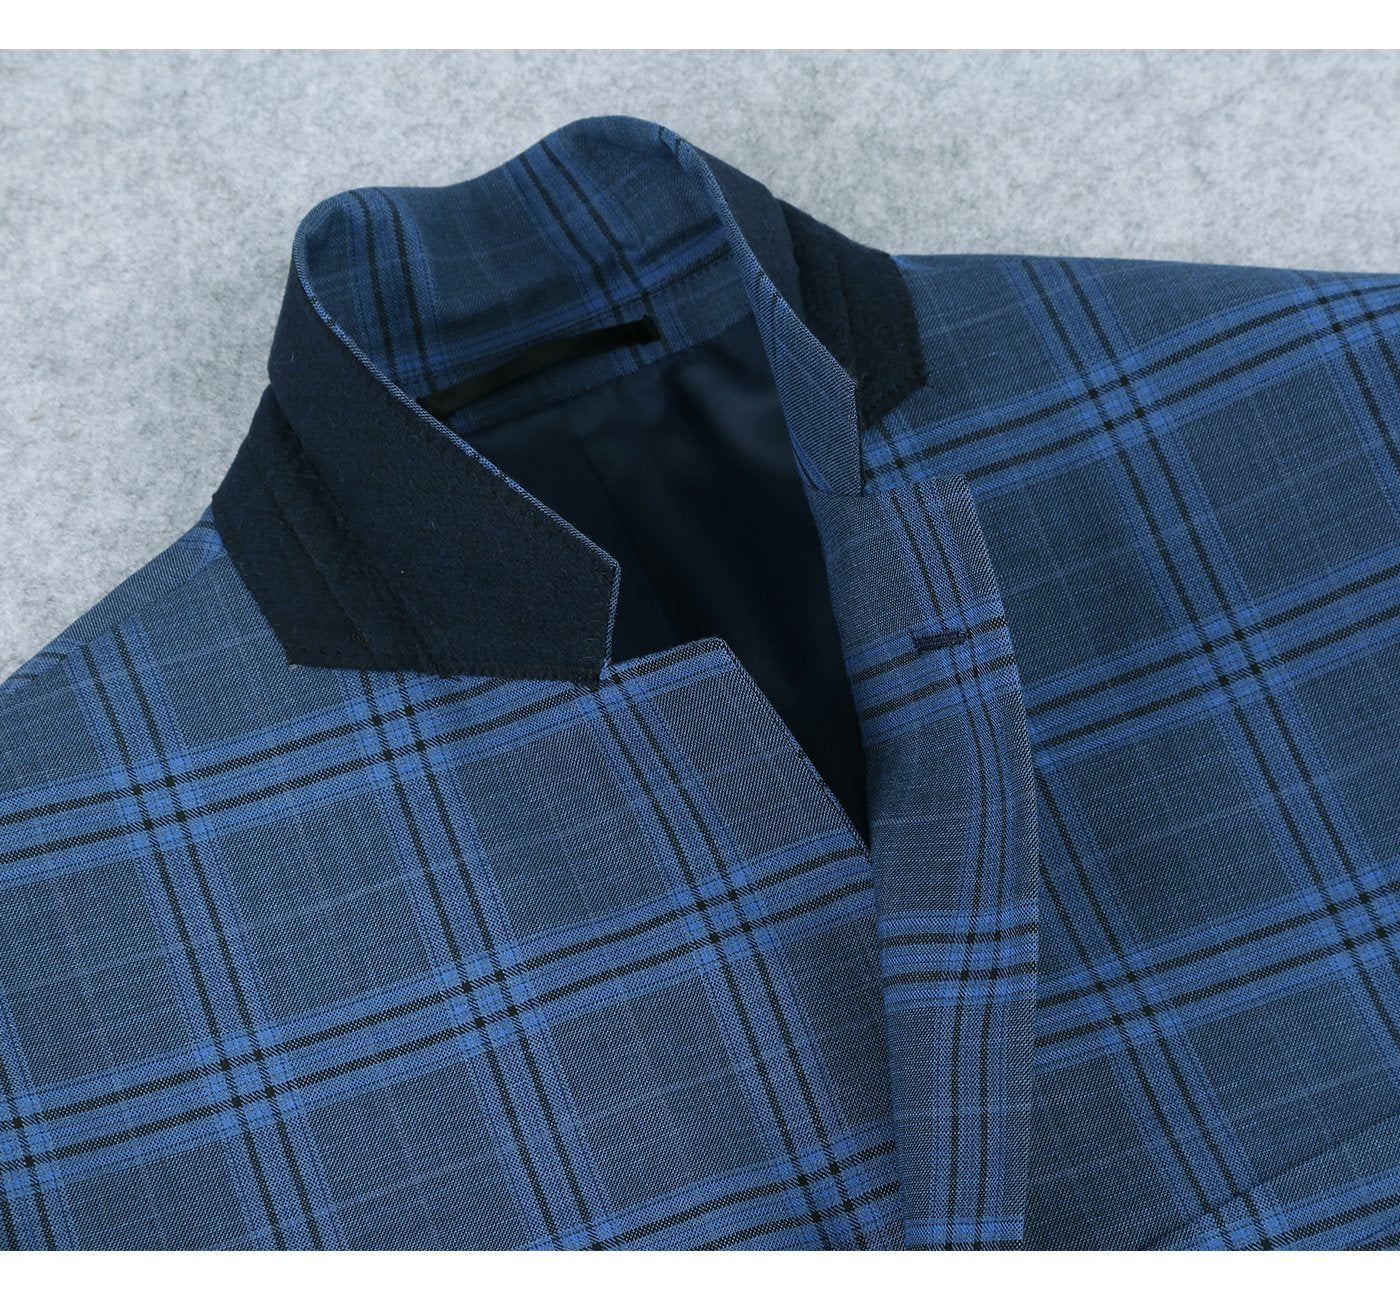 293-4 Men's 2-Piece Slim Fit Notch Lapel Blue Plaid Windowpane Suit